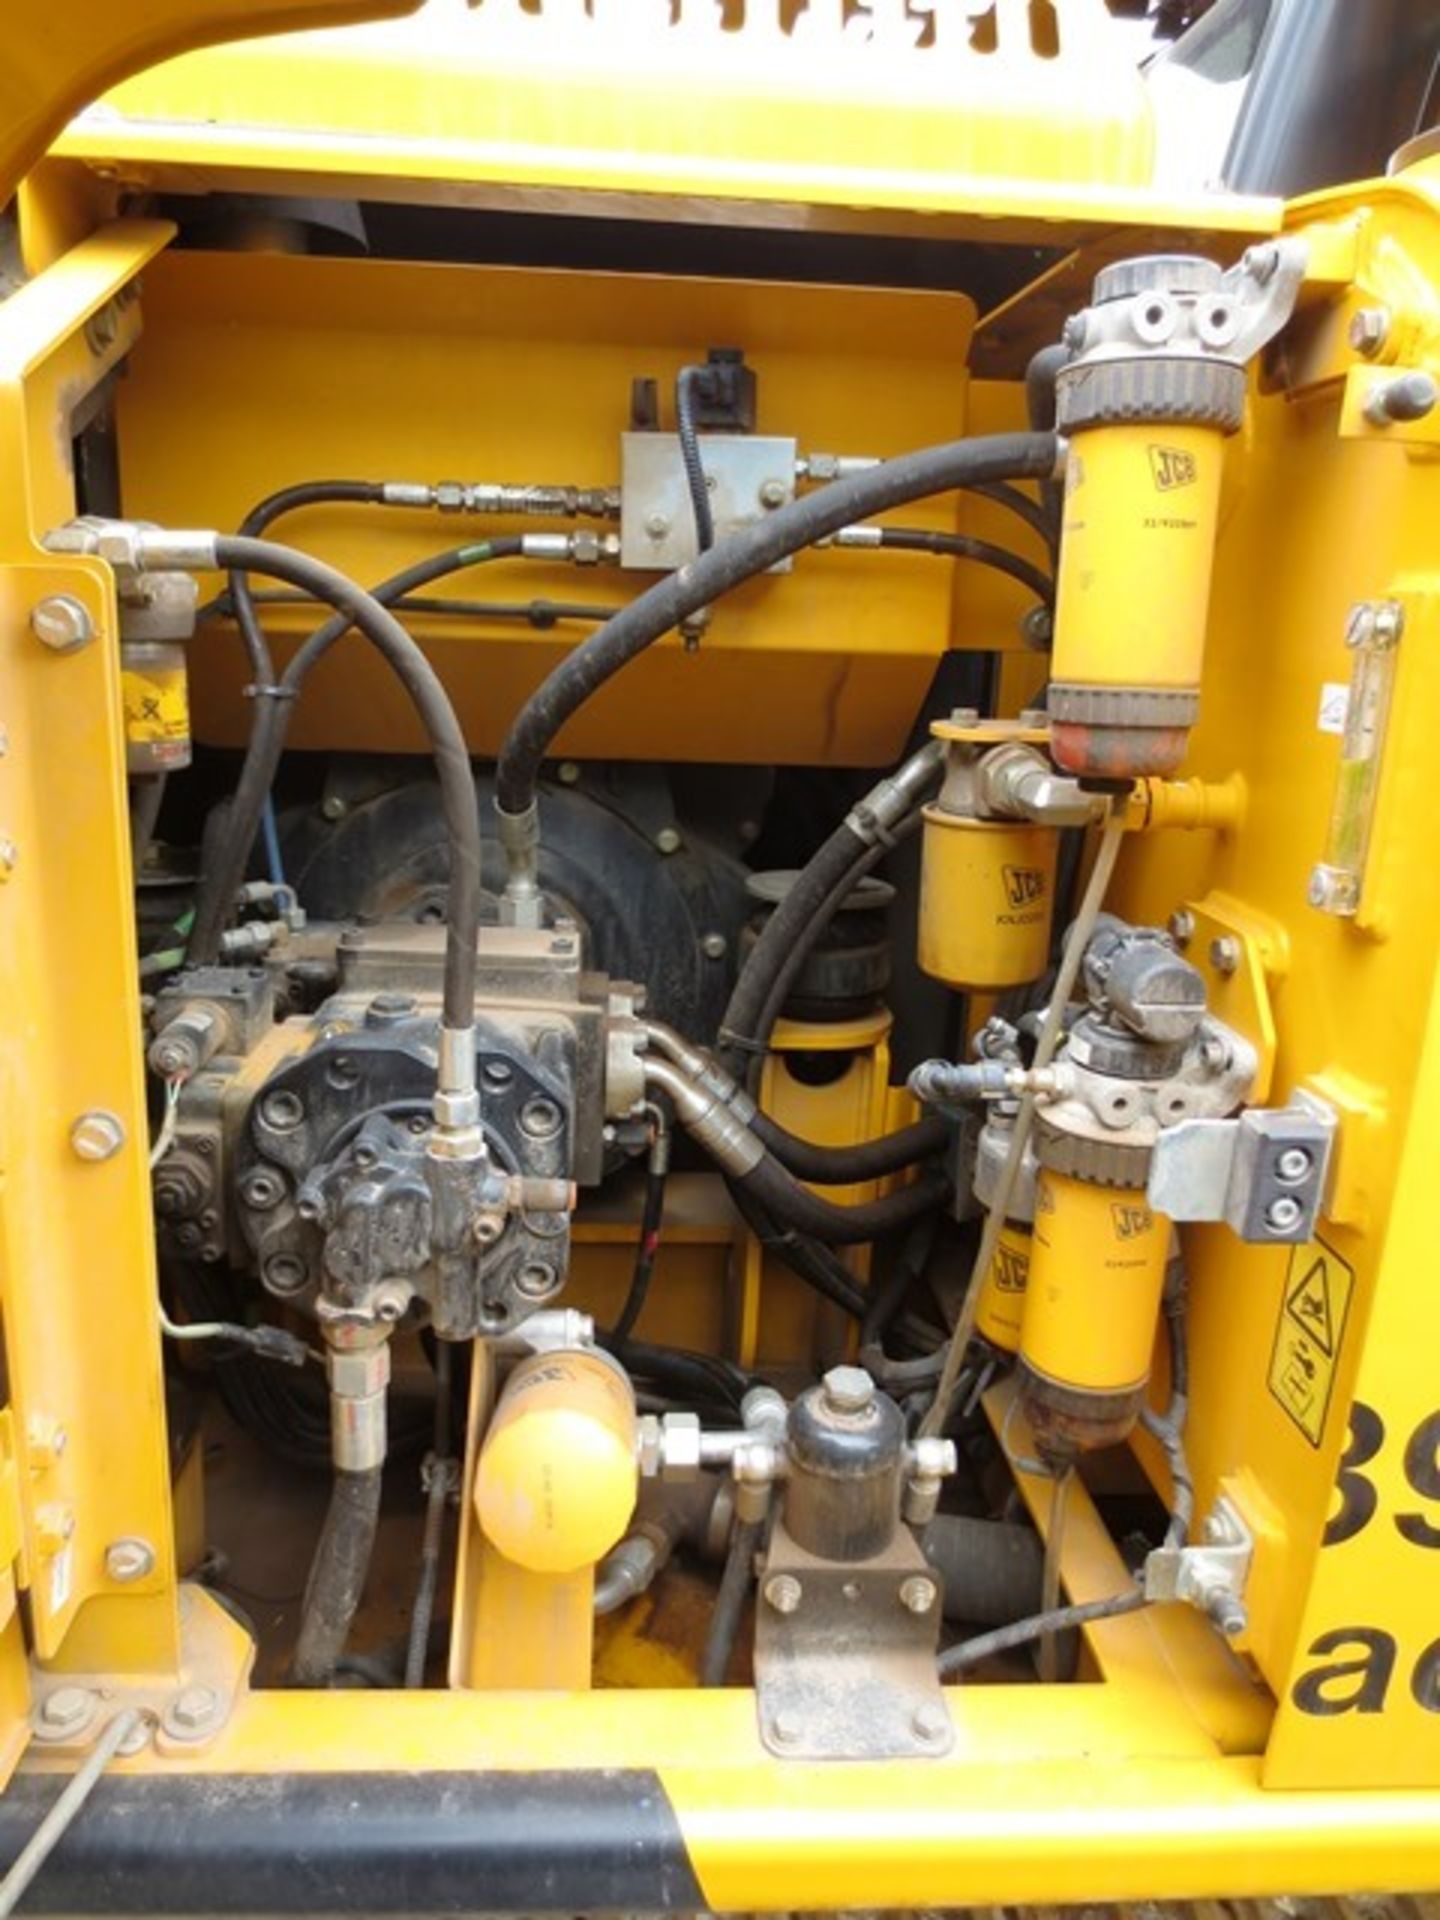 JCB JS130LC T4i IIIB steel tracked hydraulic excavator, product ID No: JCBJS13EVO2134453 (2014), - Image 17 of 19